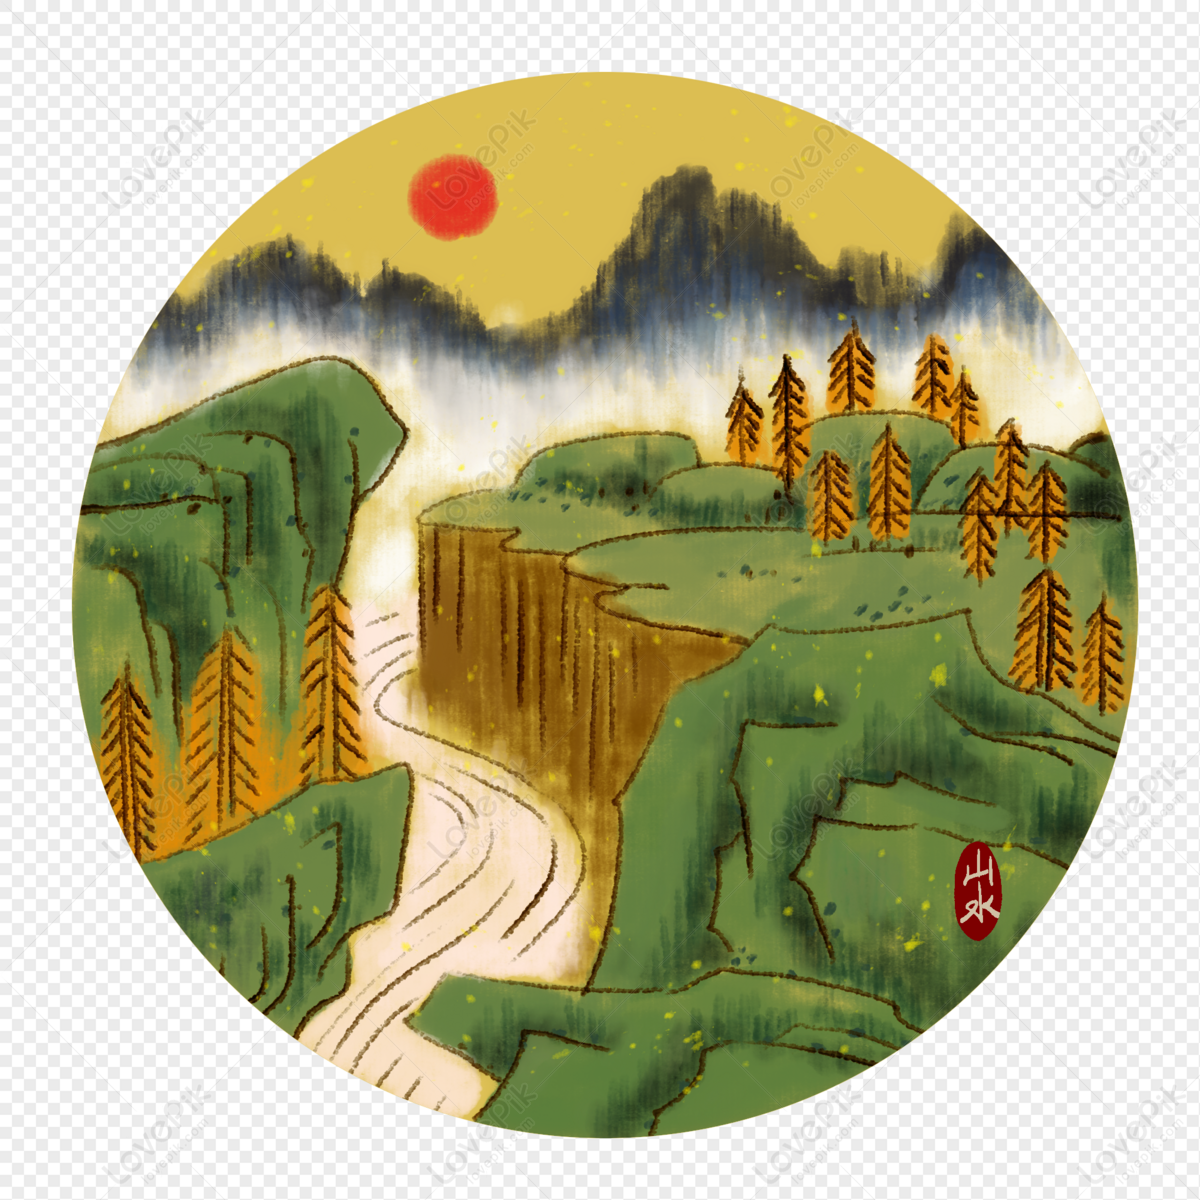 Tranh Trung Quốc Màu Nước Mã Xanh Cổ: Những bức tranh Trung Quốc màu nước mã xanh cổ sẽ mang tới cho bạn một không gian tràn đầy văn hóa và lãng mạn. Hãy chiêm ngưỡng những bức tranh tuyệt đẹp này để thấy được sự nghệ thuật và ngẫu hứng trong mỗi nét vẽ.